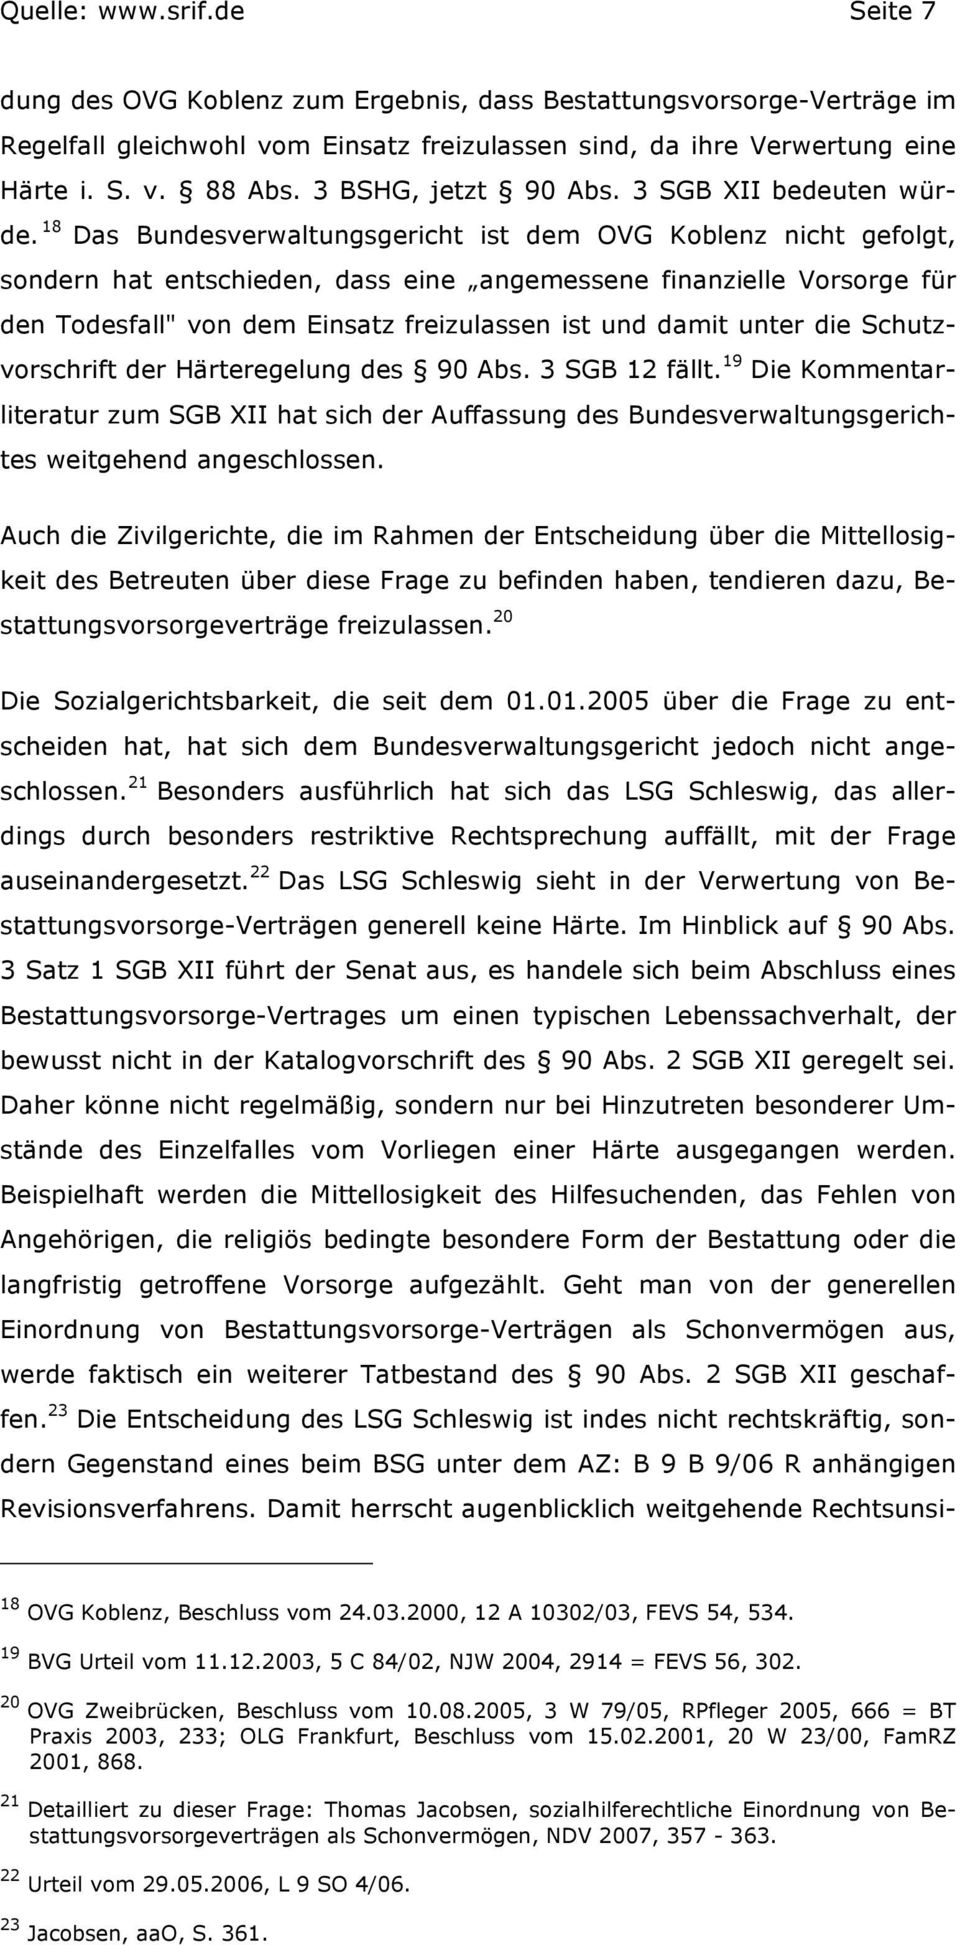 18 Das Bundesverwaltungsgericht ist dem OVG Koblenz nicht gefolgt, sondern hat entschieden, dass eine angemessene finanzielle Vorsorge für den Todesfall" von dem Einsatz freizulassen ist und damit